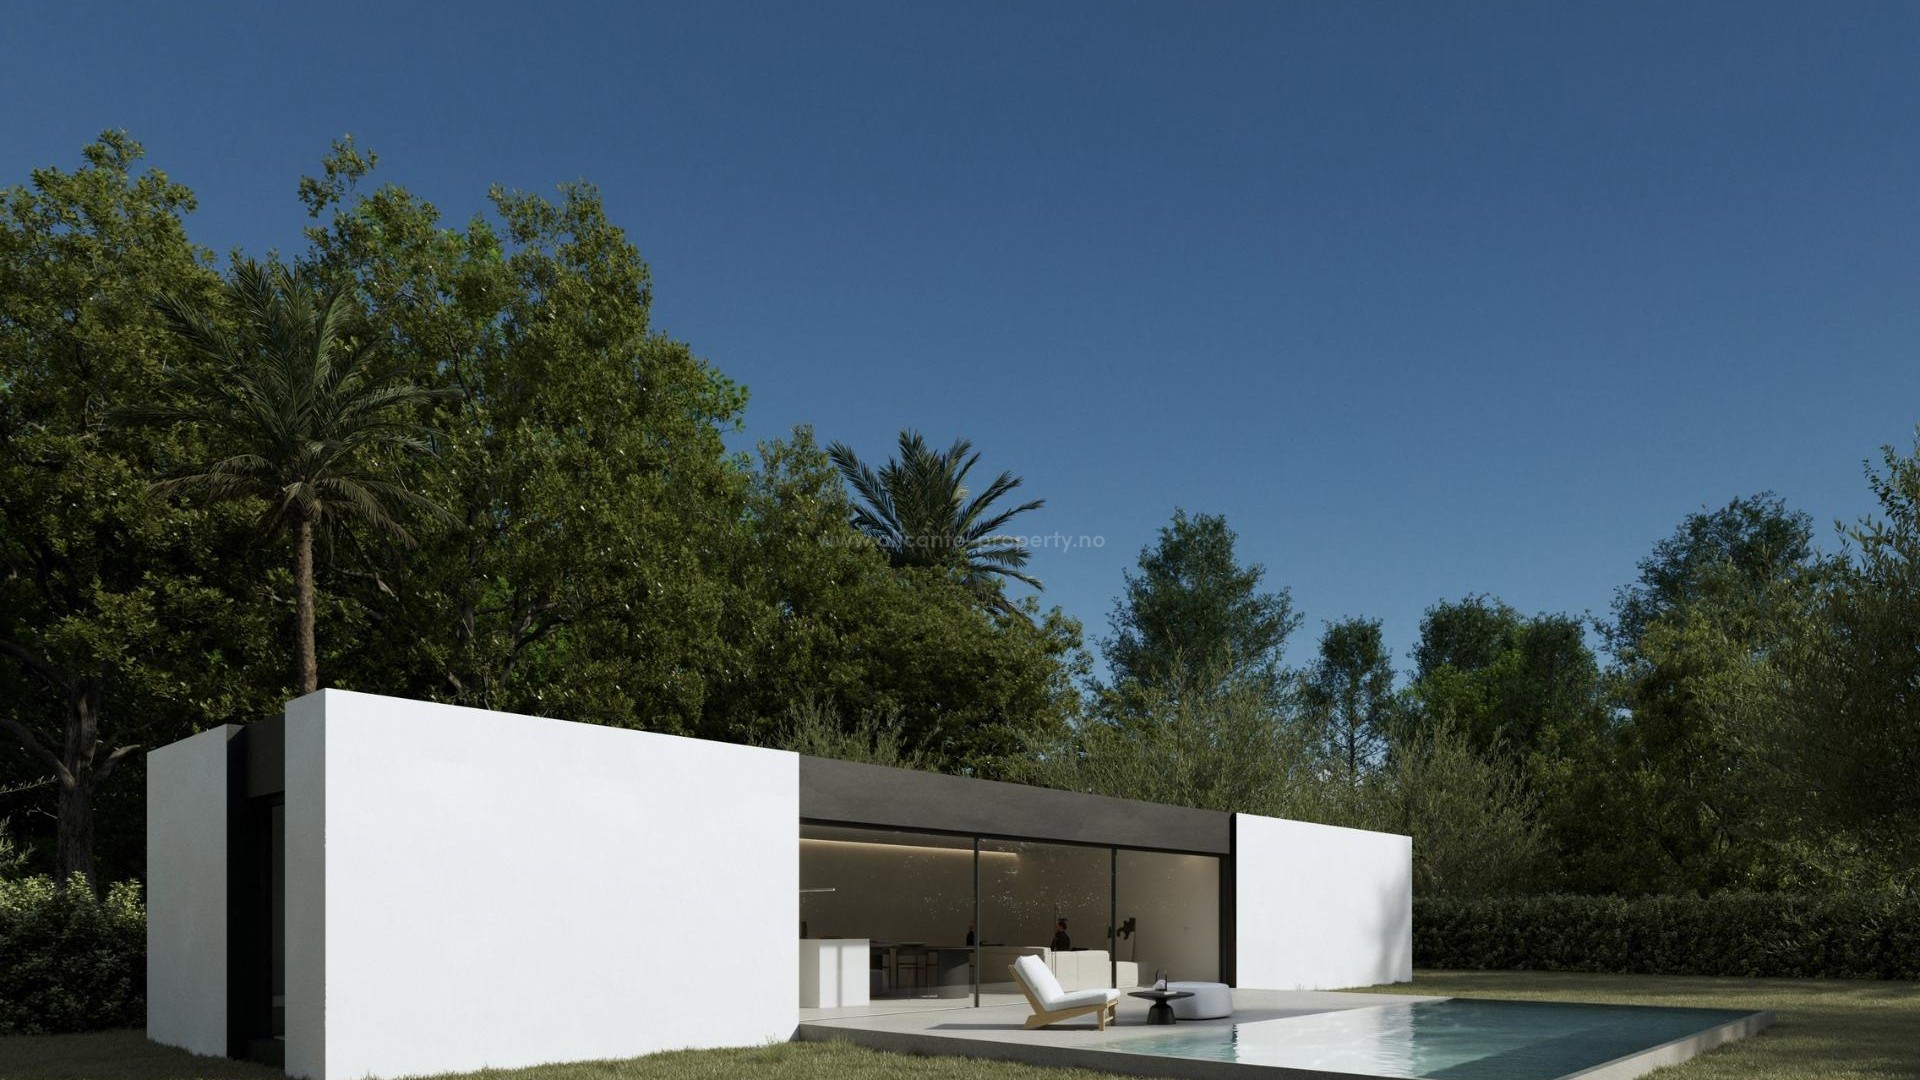 Nybyggede Villaer/hus i Alfas del Pi, 3 soverom og 2 bad, terrasse, privat hage, felles basseng, selvforbruk med solcellepaneler, parkering